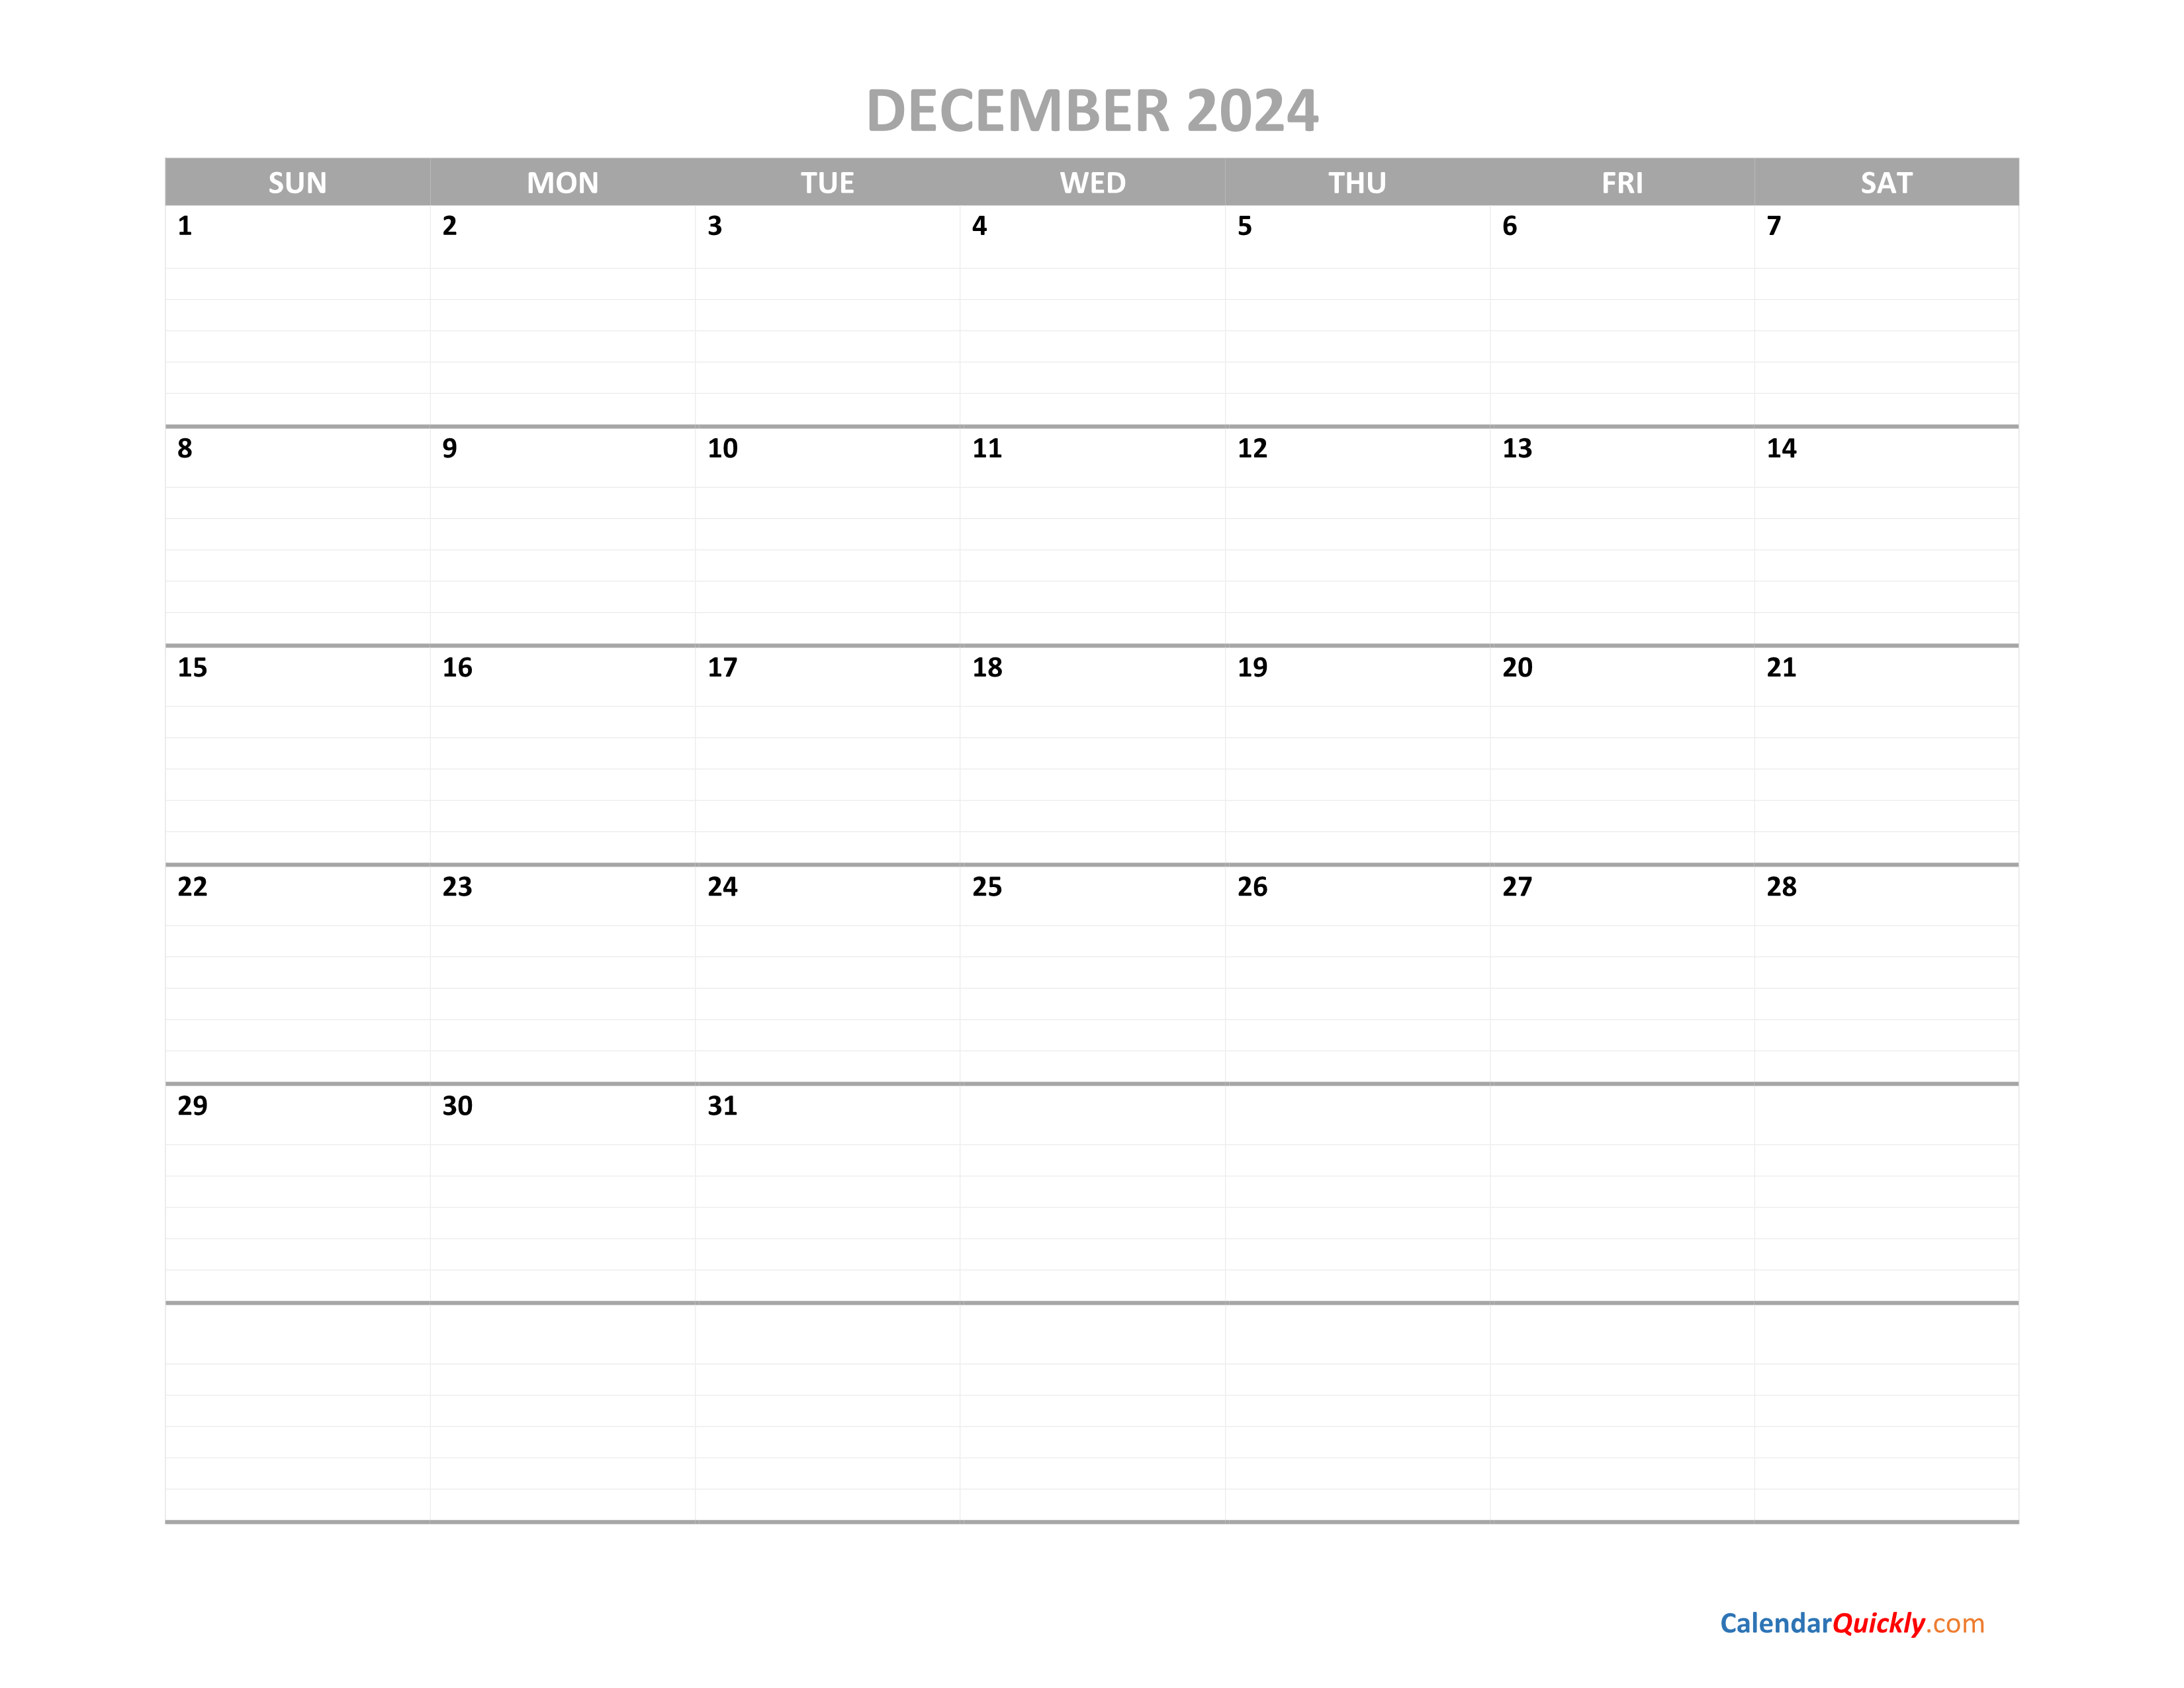 December Calendar 2024 Printable | Calendar Quickly